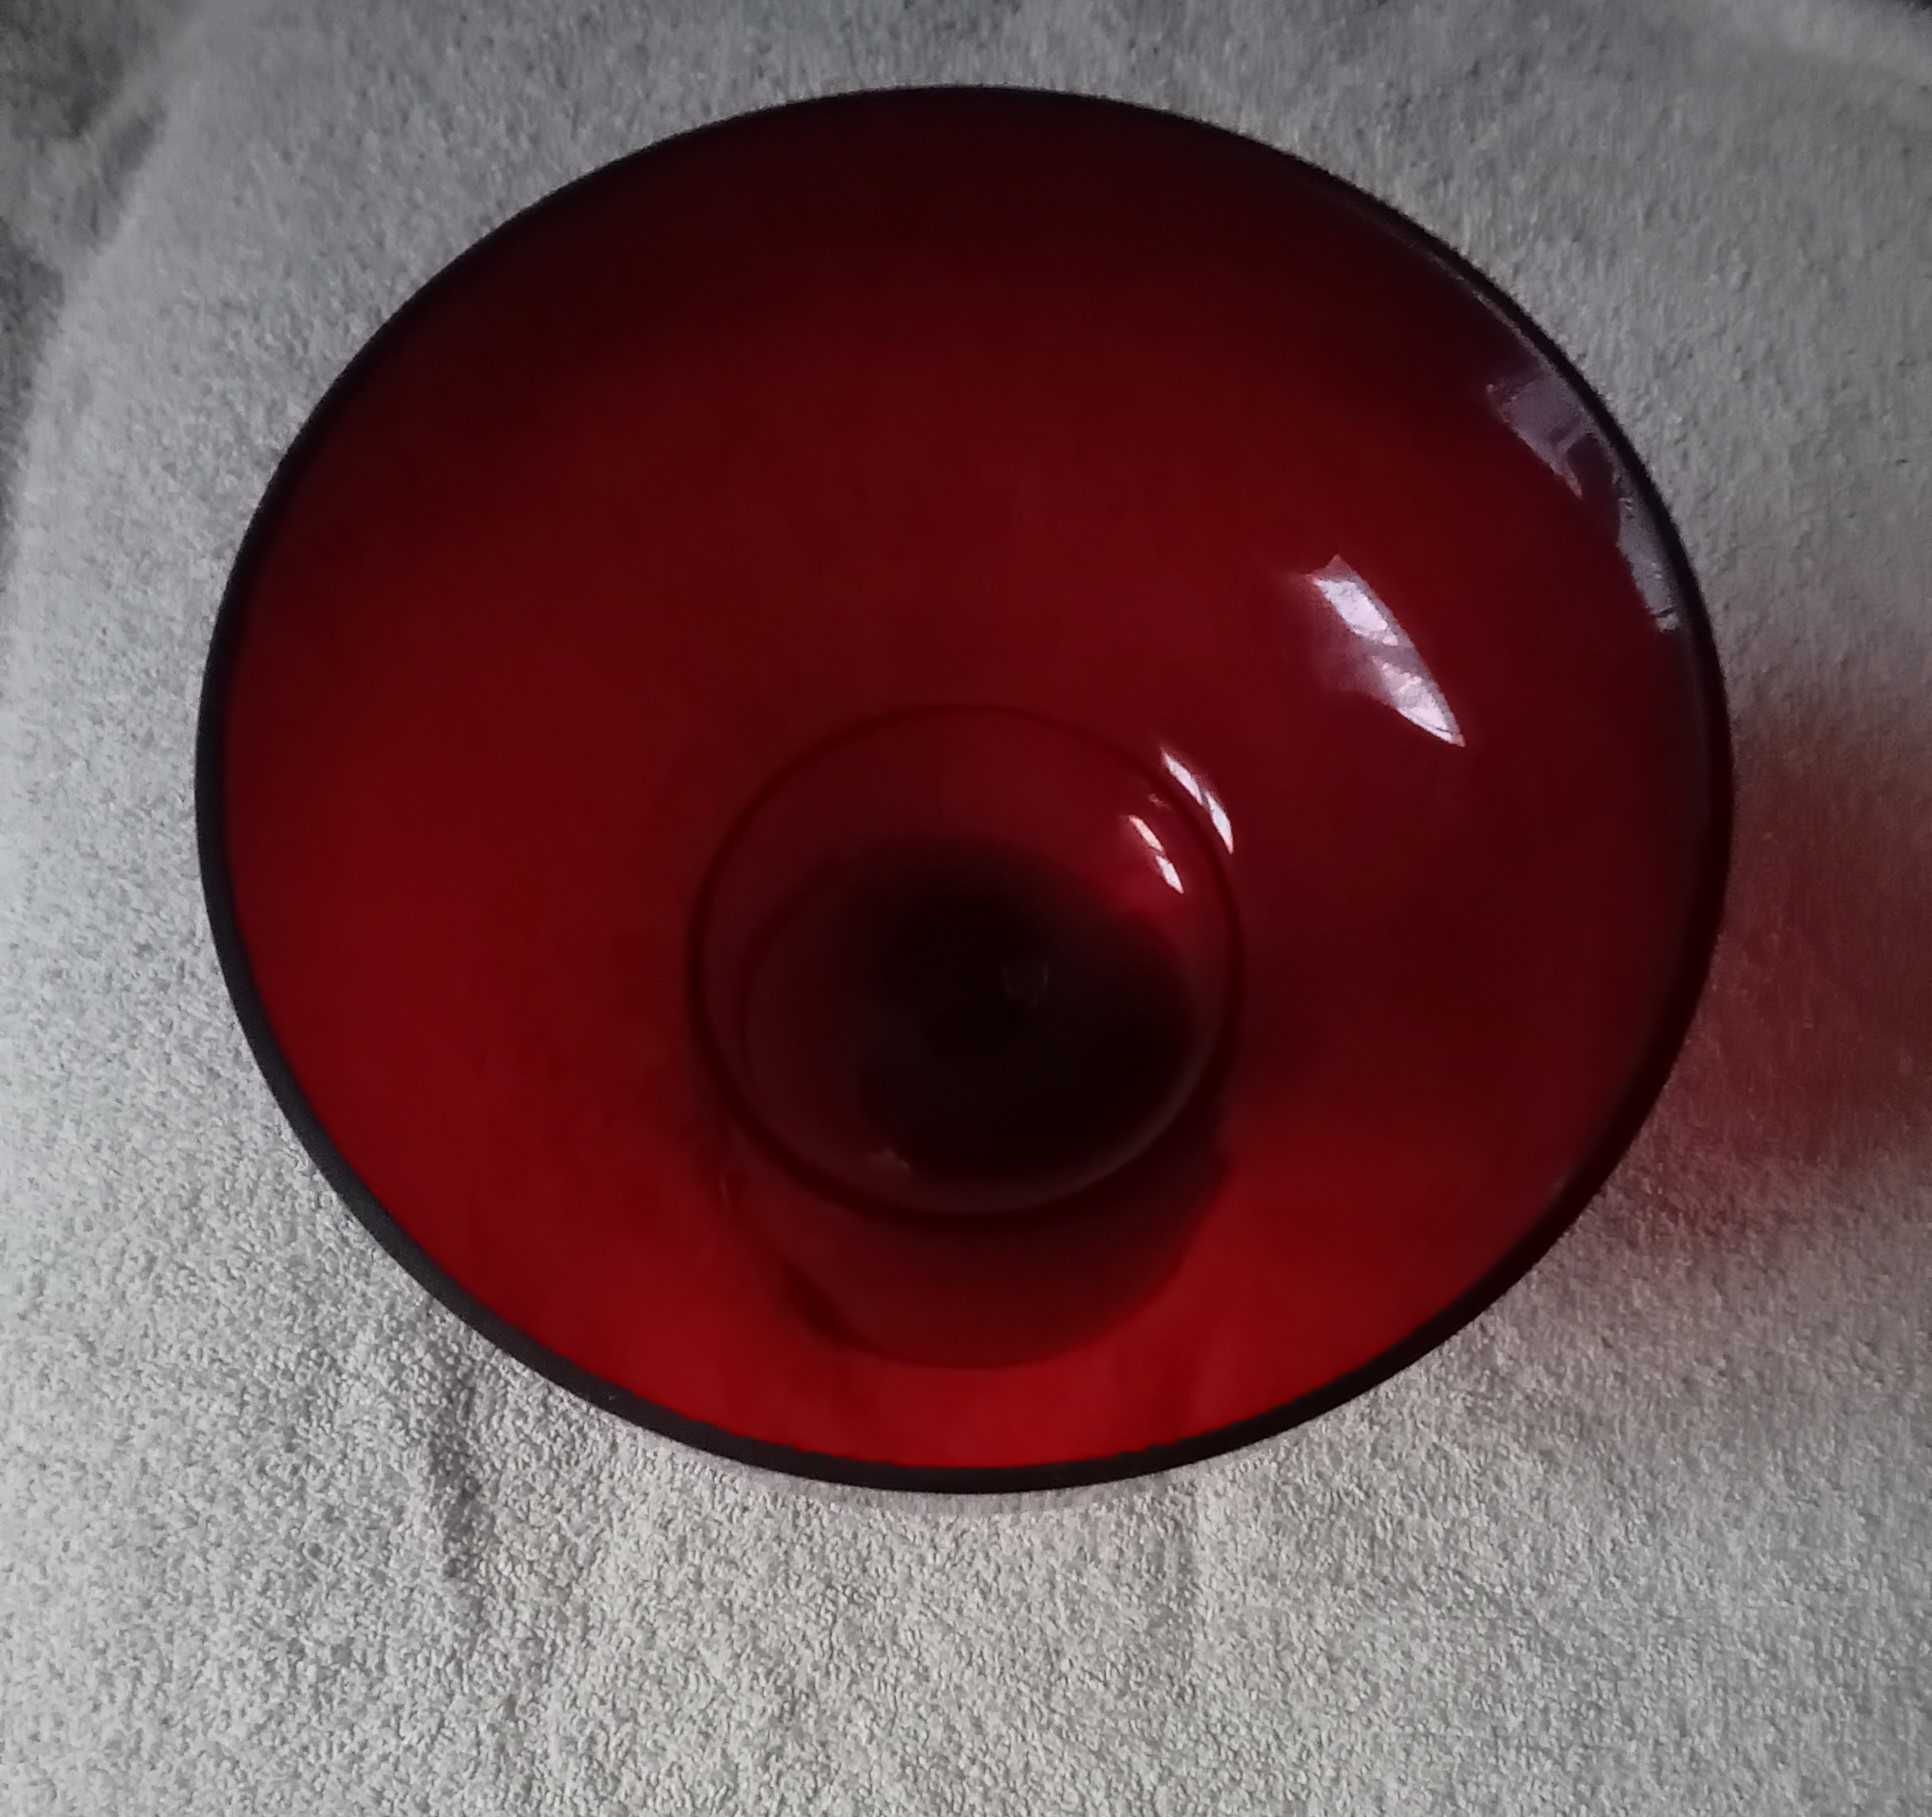 Duży rubinowy puchar - owocarka, szkło barwione w masie. Świeci w UV.